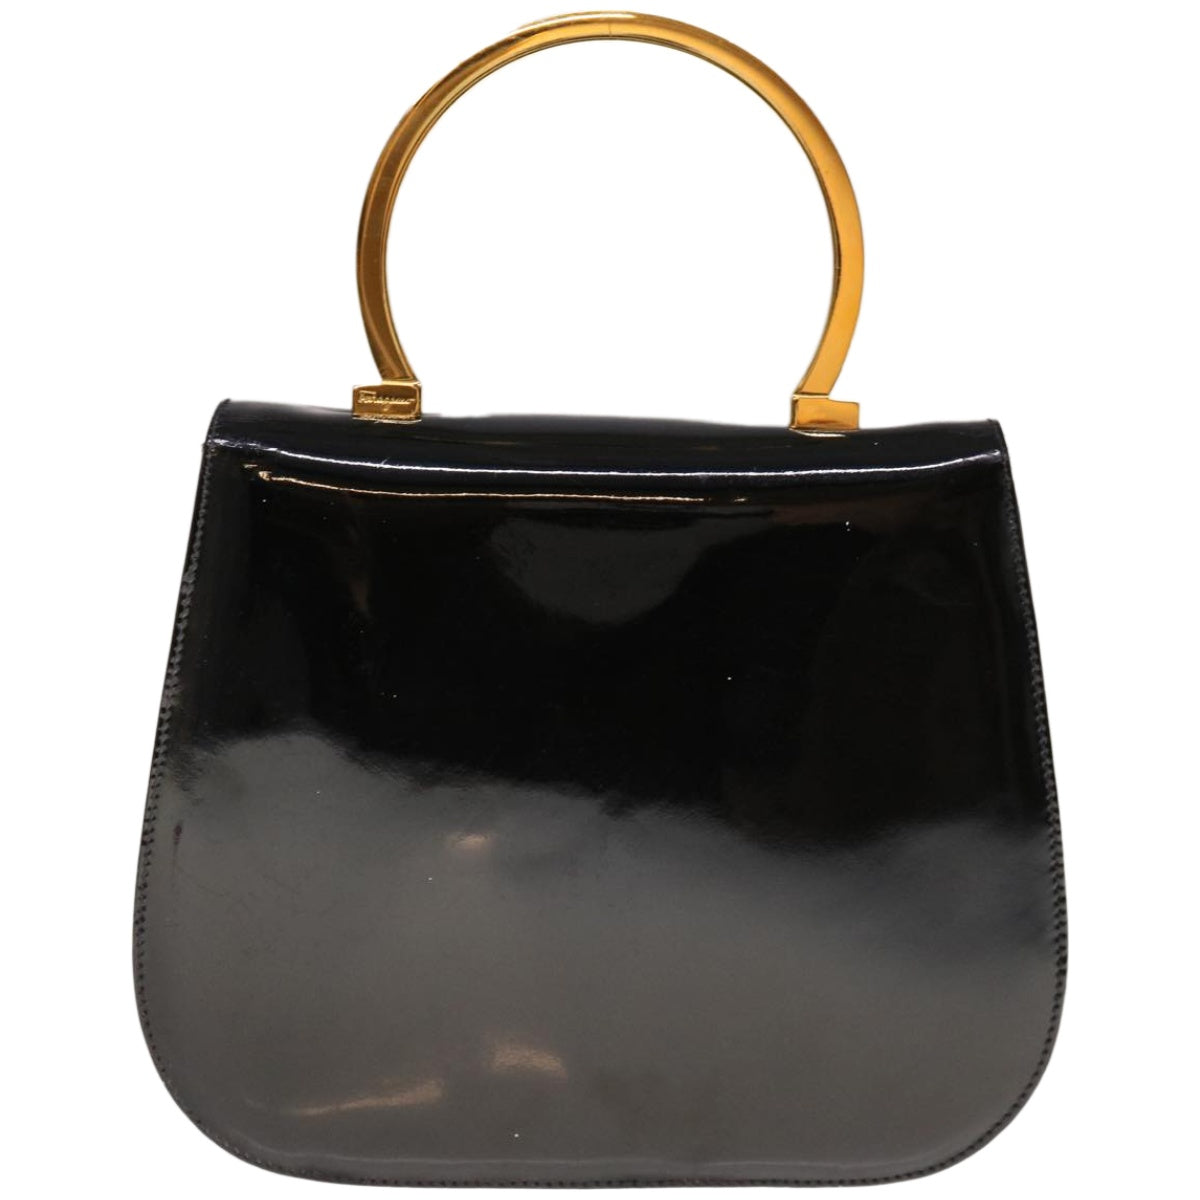 Salvatore Ferragamo Hand Bag Patent leather Black Auth hk1083 - 0